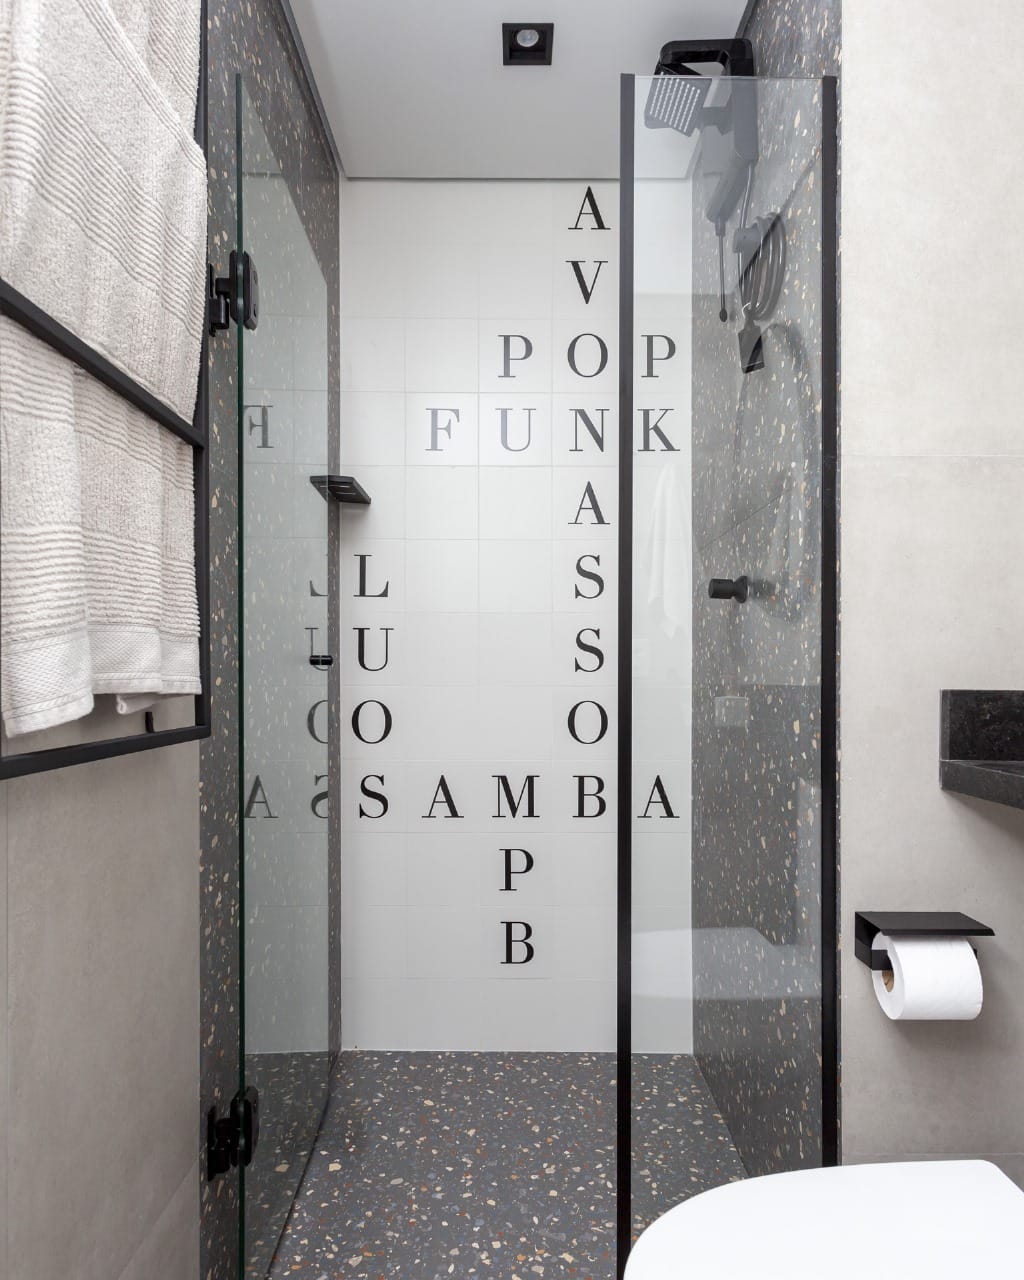 Banheiro com azulejo de letras formando estilos musicais